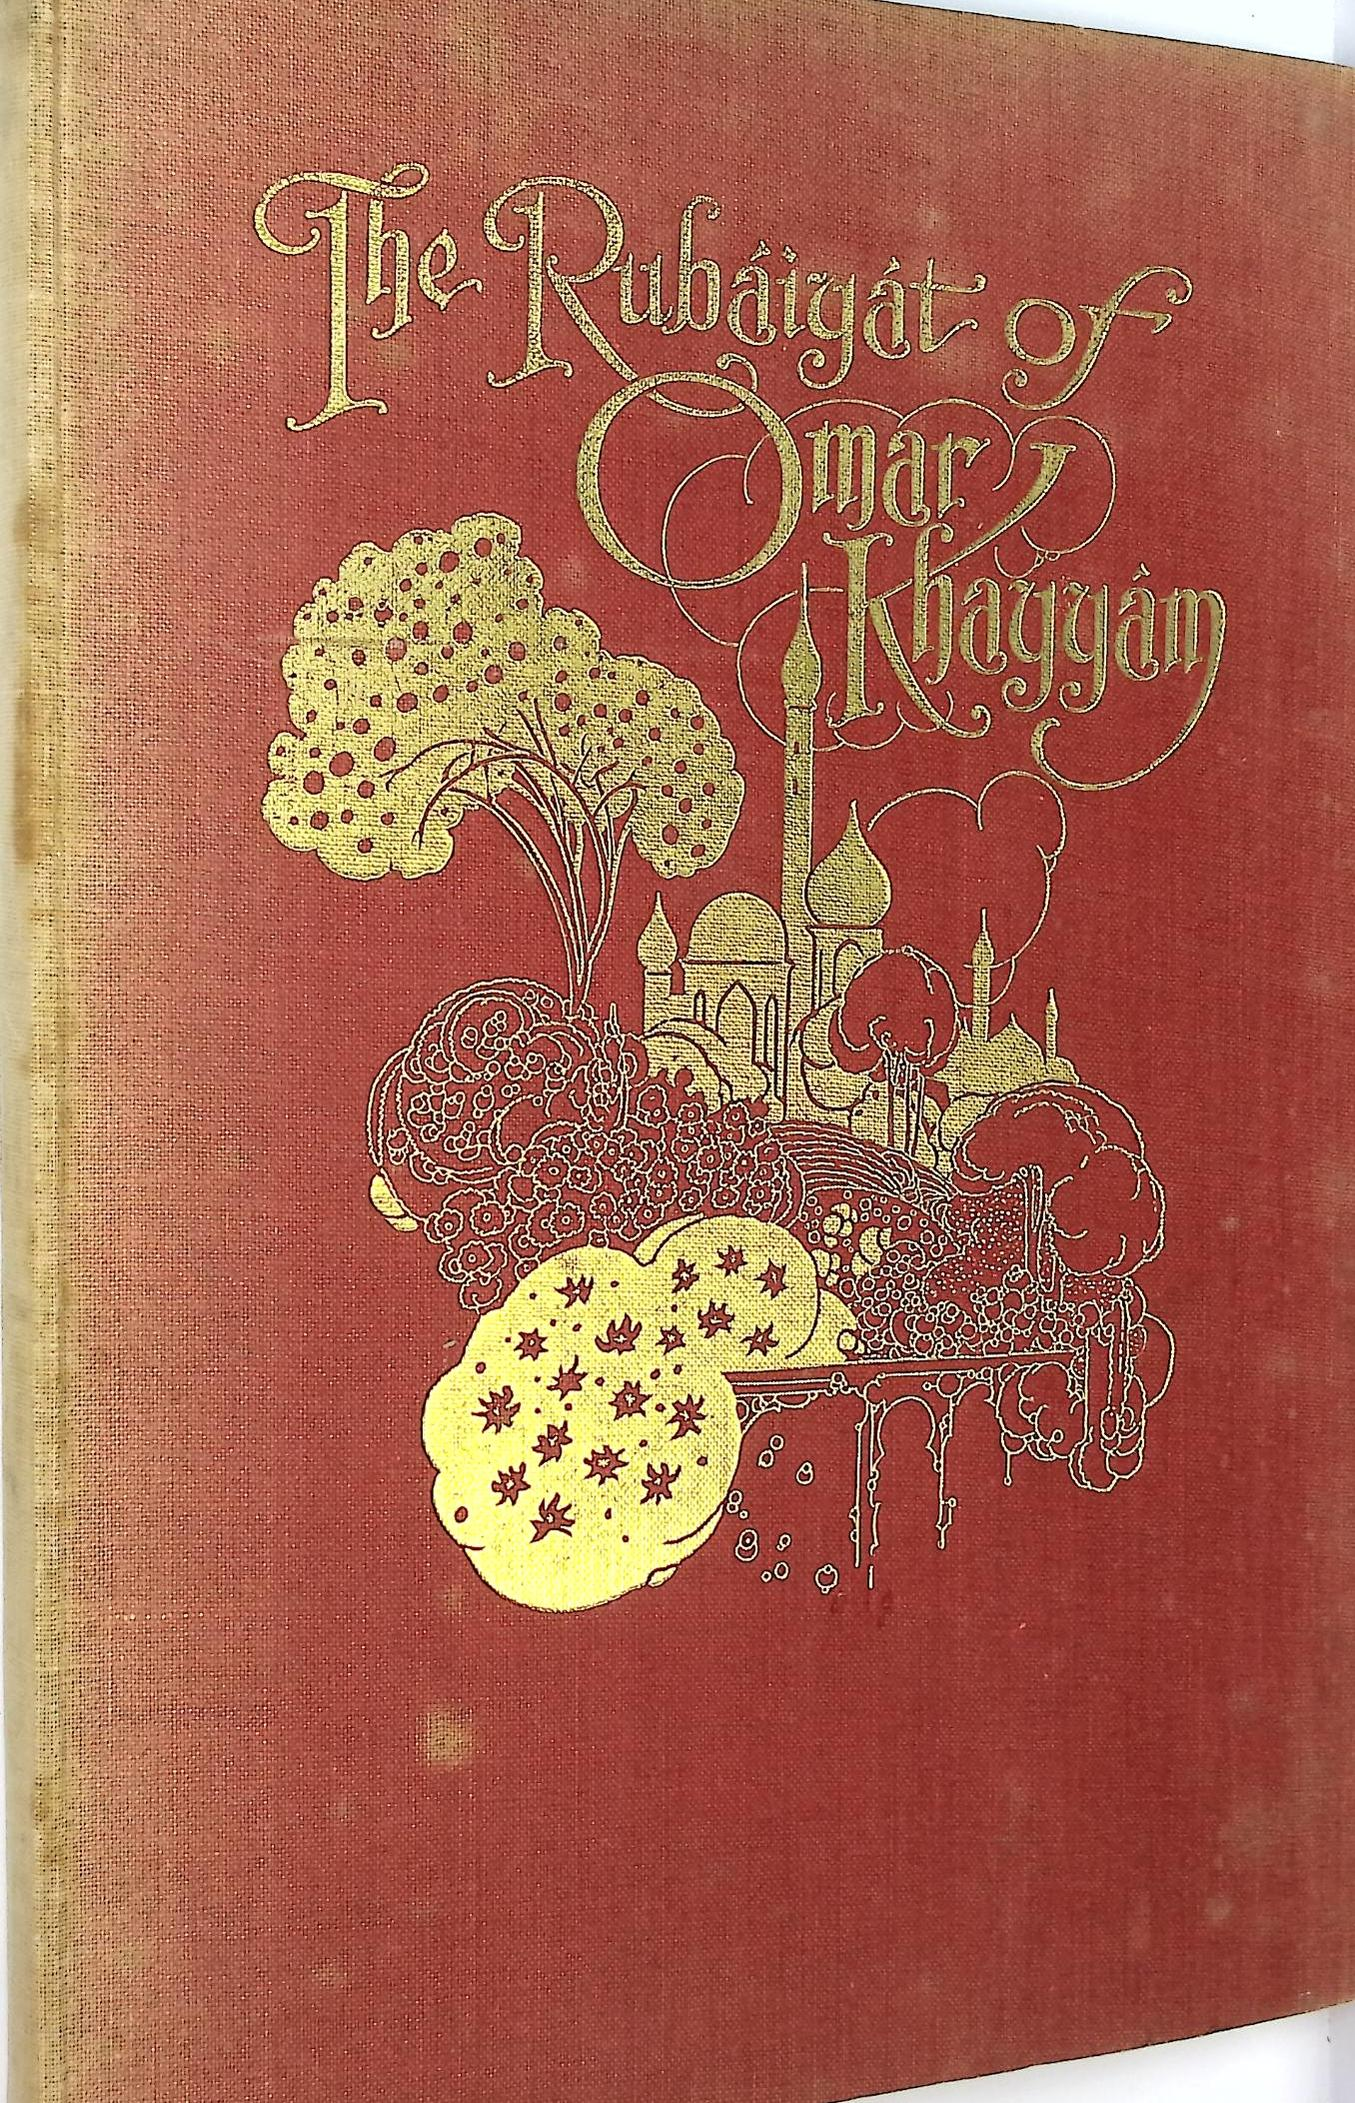 The Rubiyt of Omar Khayym. Collins edition.